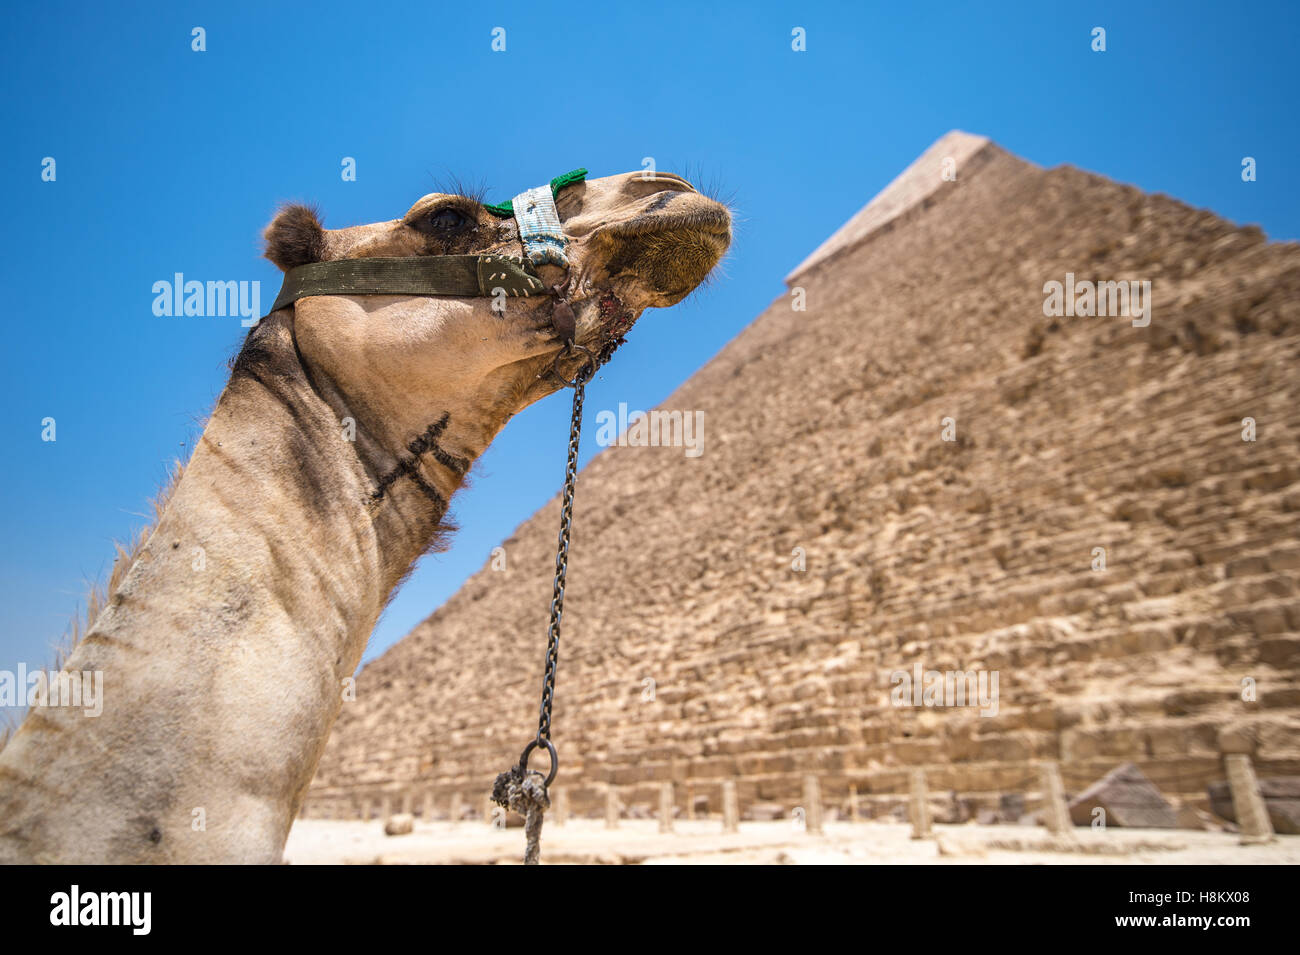 Le Caire, Egypte Camel au repos dans le désert avec les grandes pyramides de Gizeh à l'arrière-plan. C'est la pyramide de Khafré, le s Banque D'Images